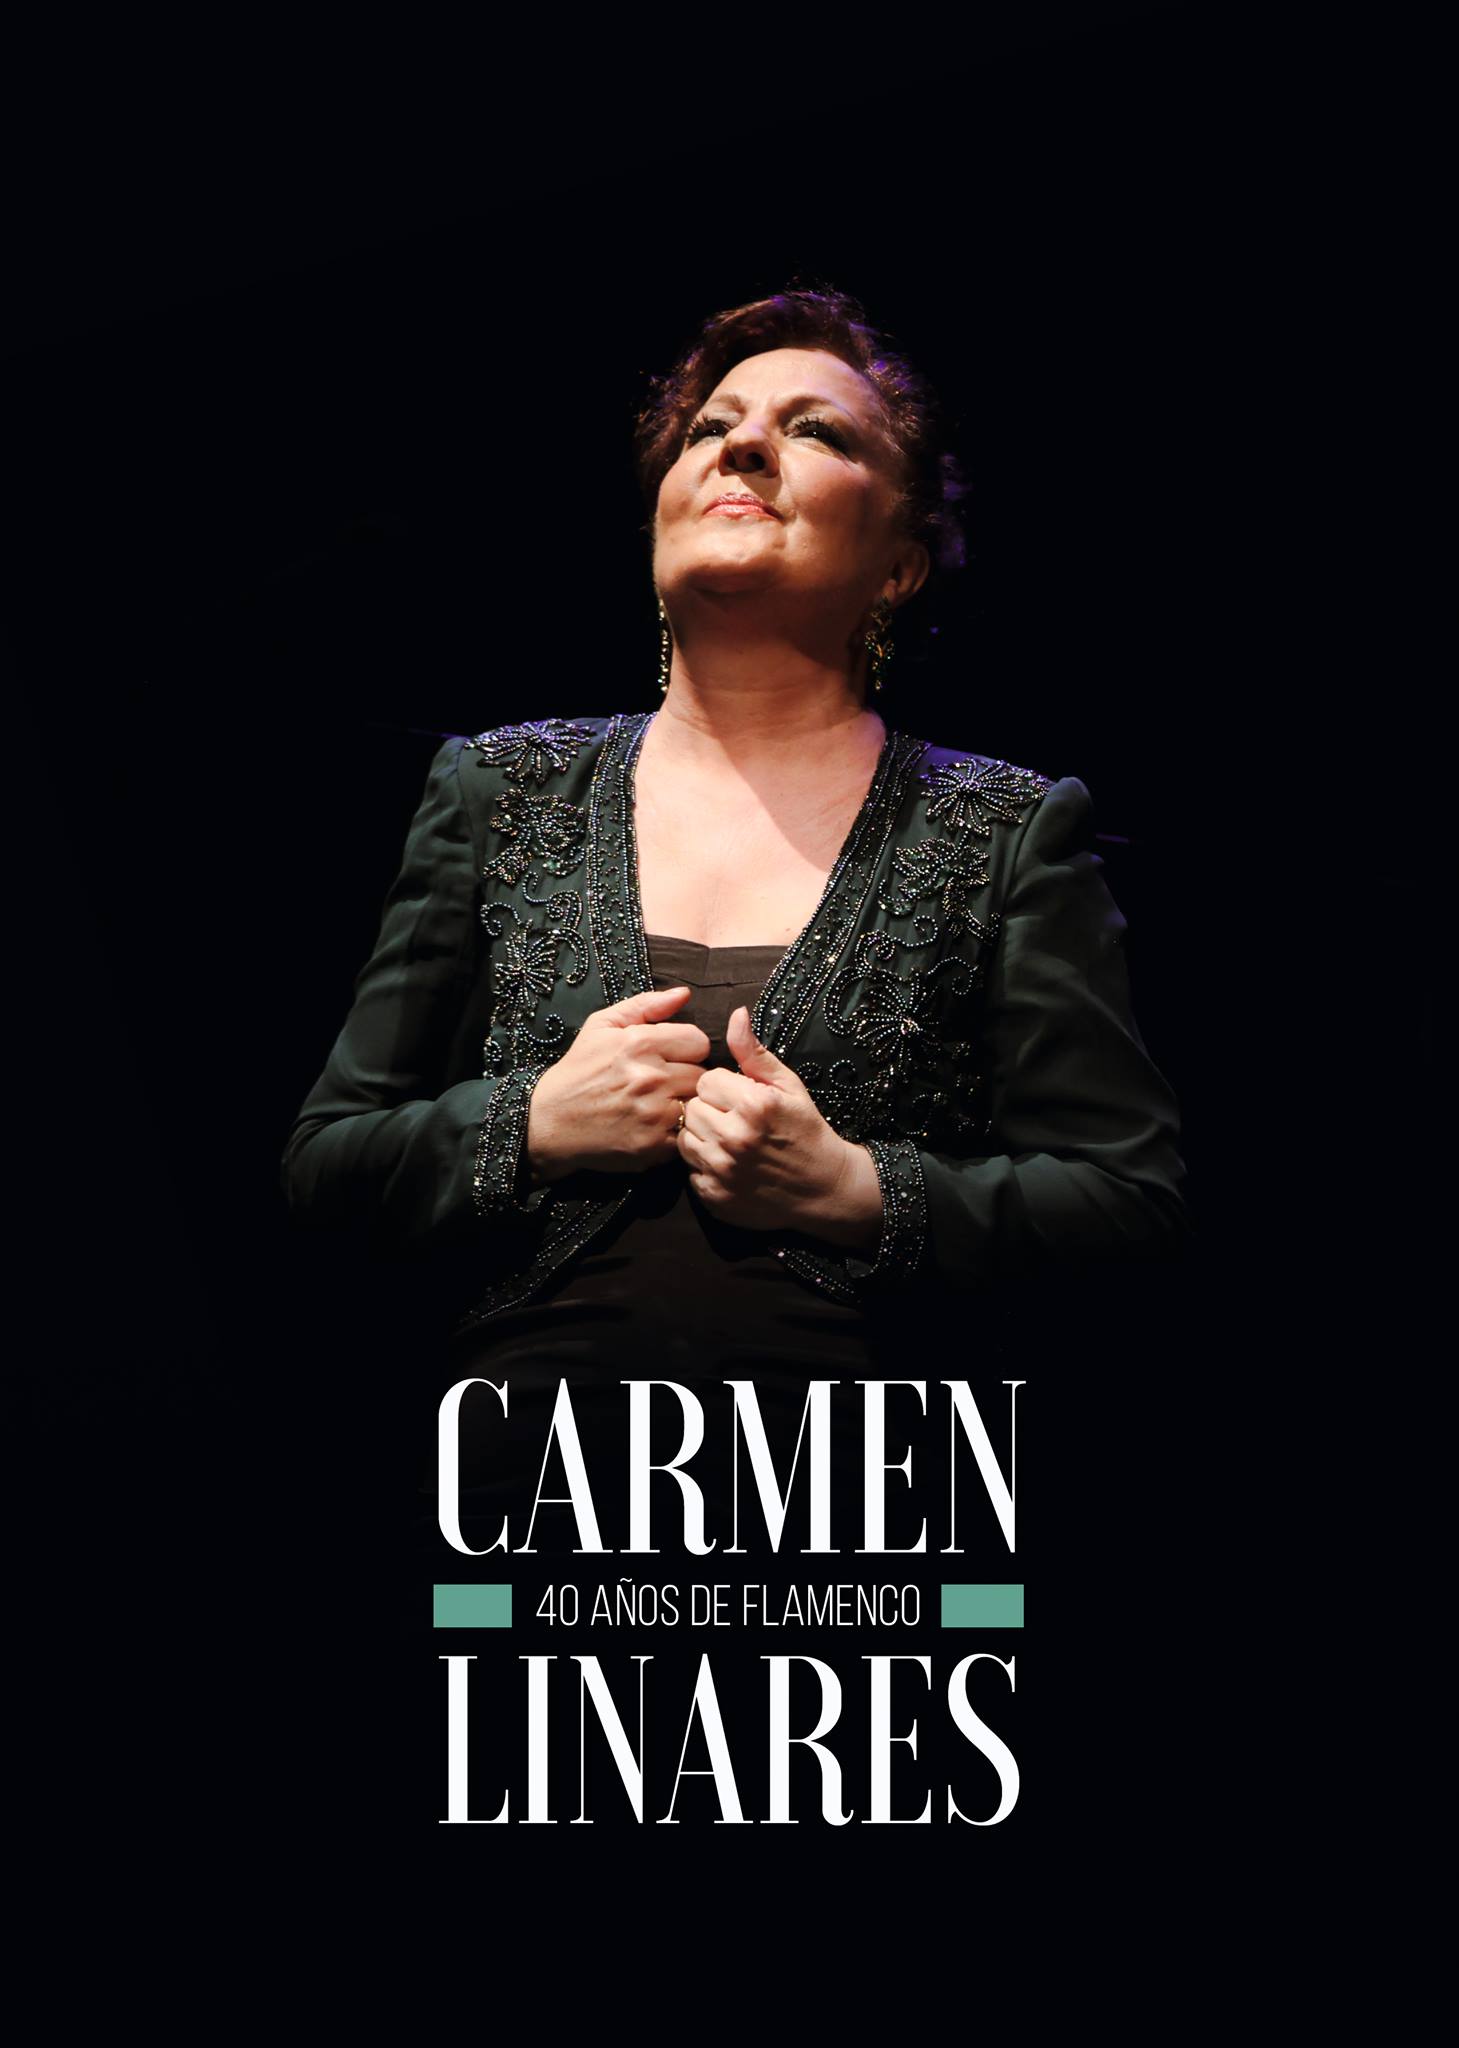 Carmen Linares - 40 años